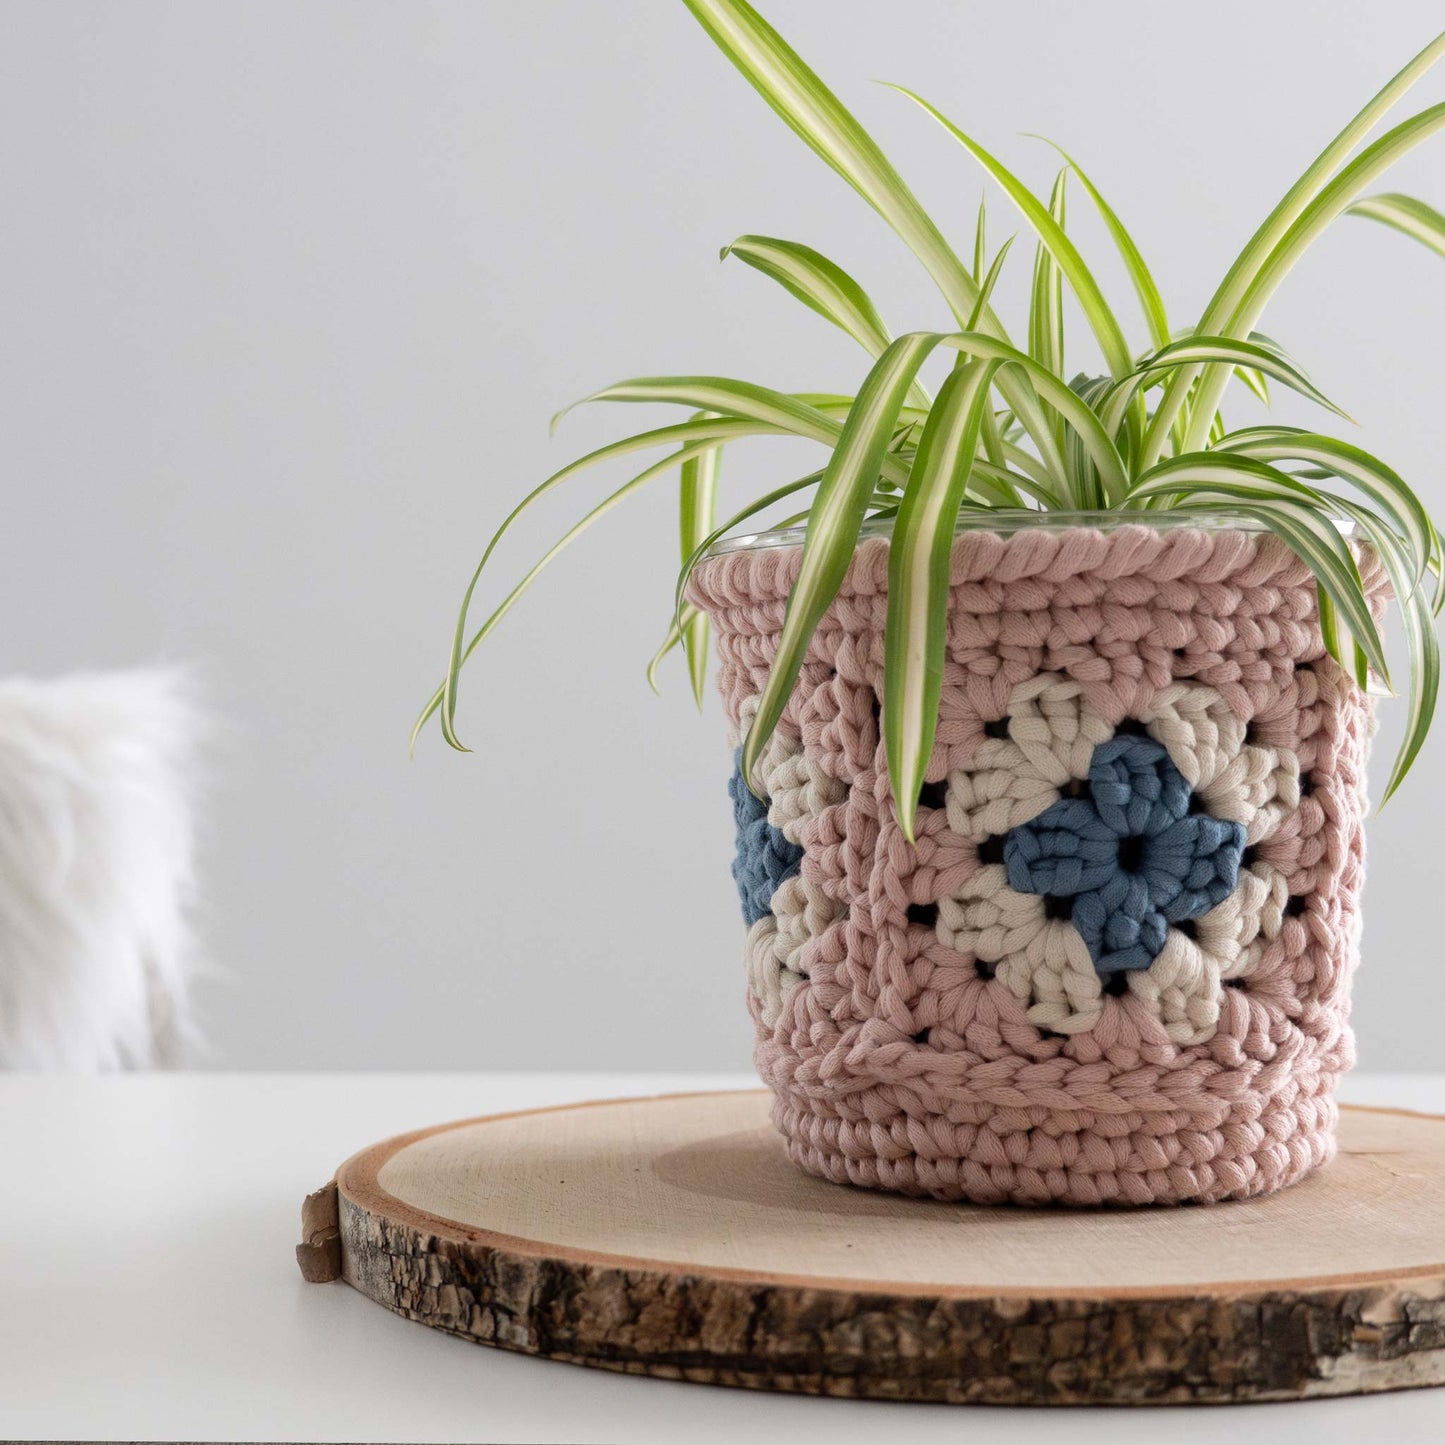 Crochet Granny Square Plant Pot Cover